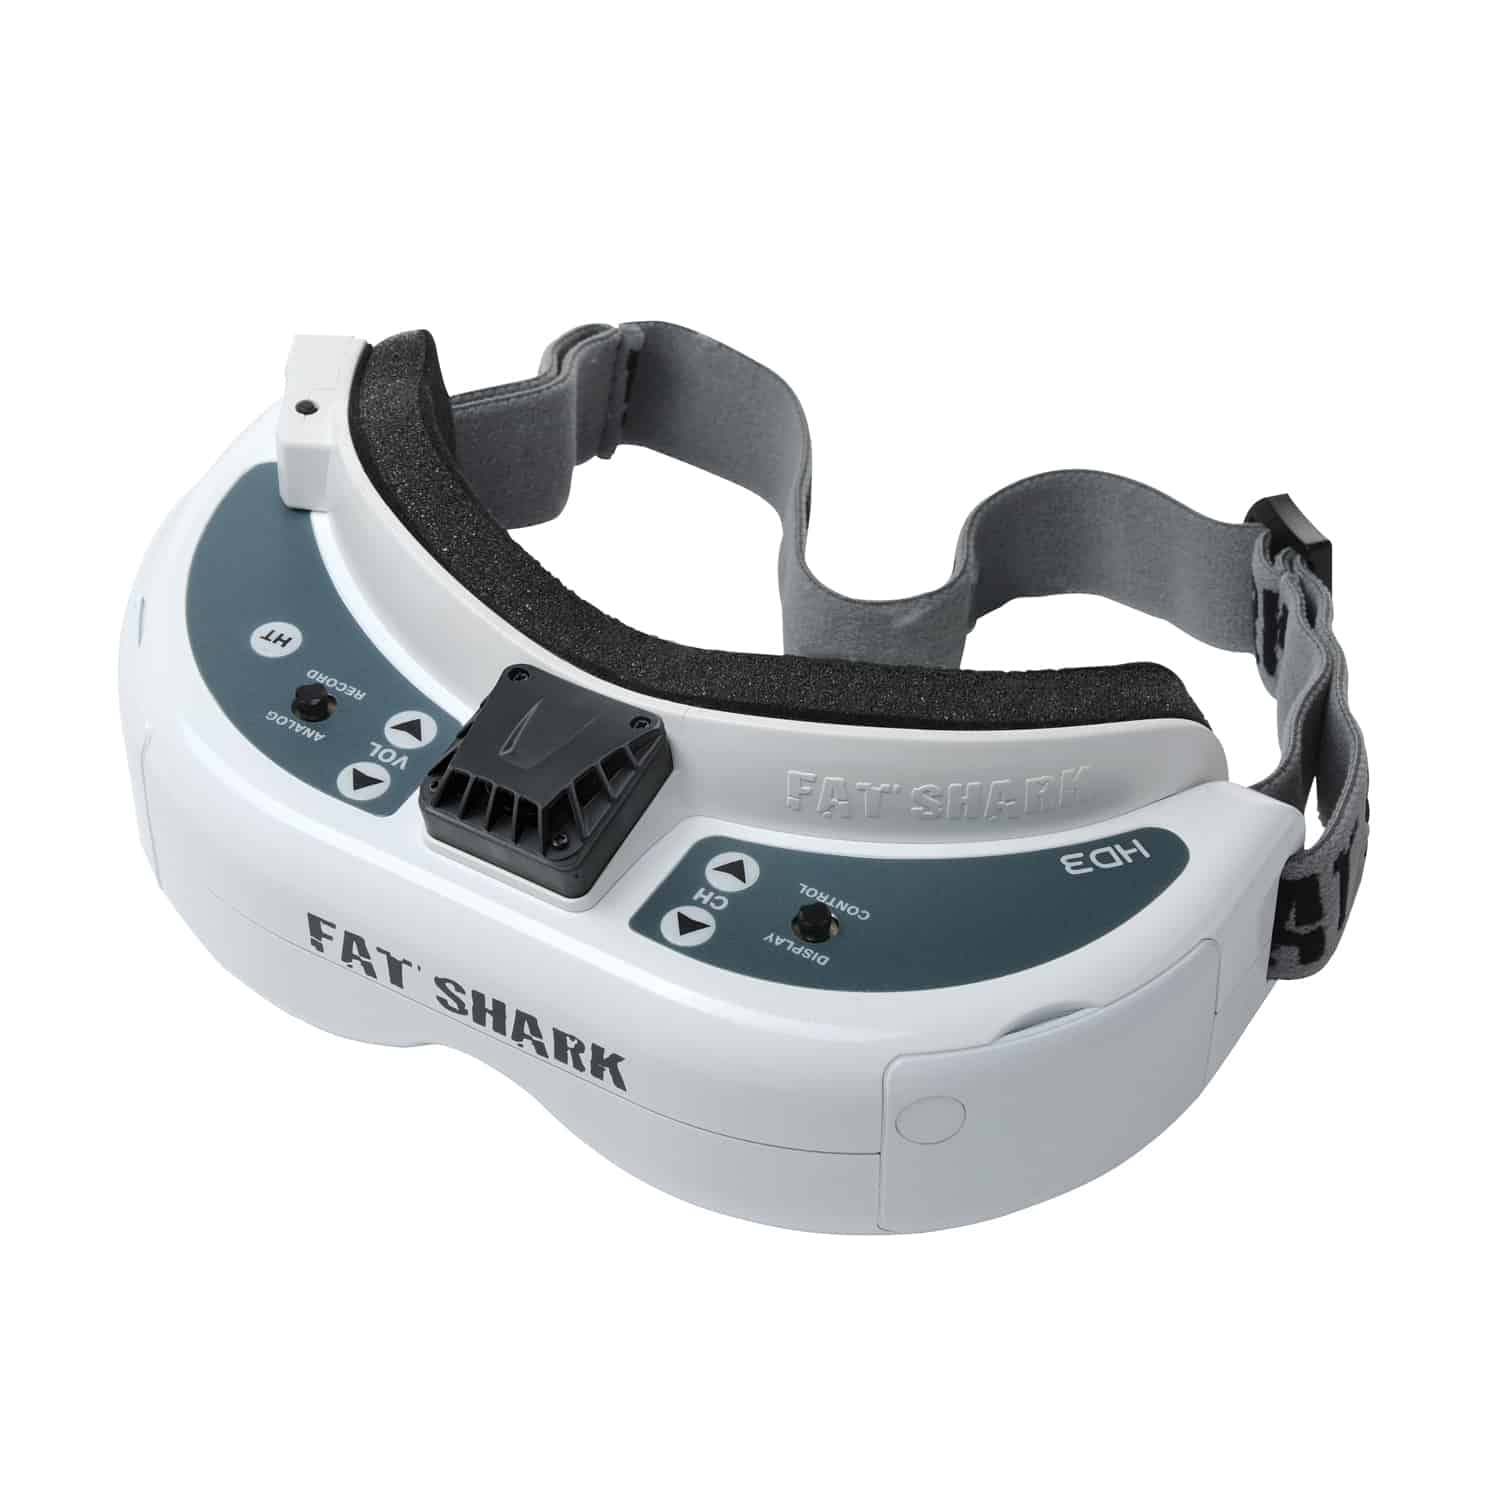 FPV goggles